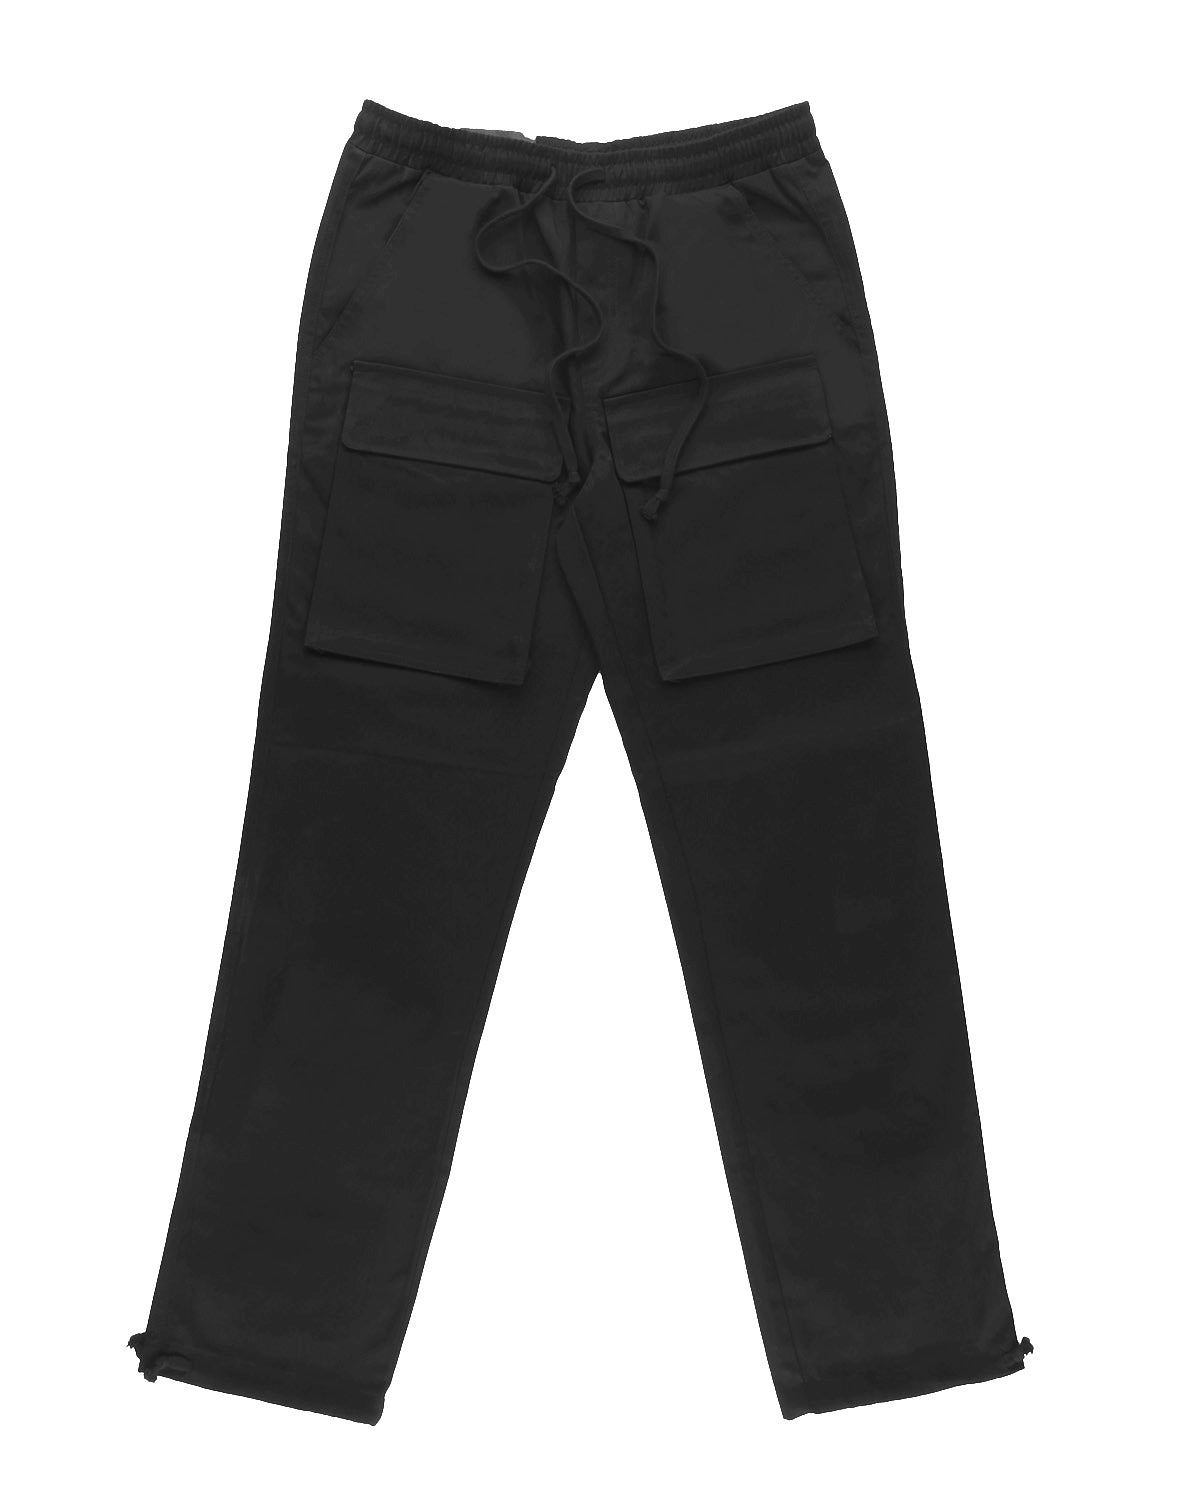 Multi-pocket cargo pants, Cargo Pant for Men, Pocket Cargo Pant, Polyester  Cargo Pant, कार्गो पैंट - Star Traders, Visakhapatnam